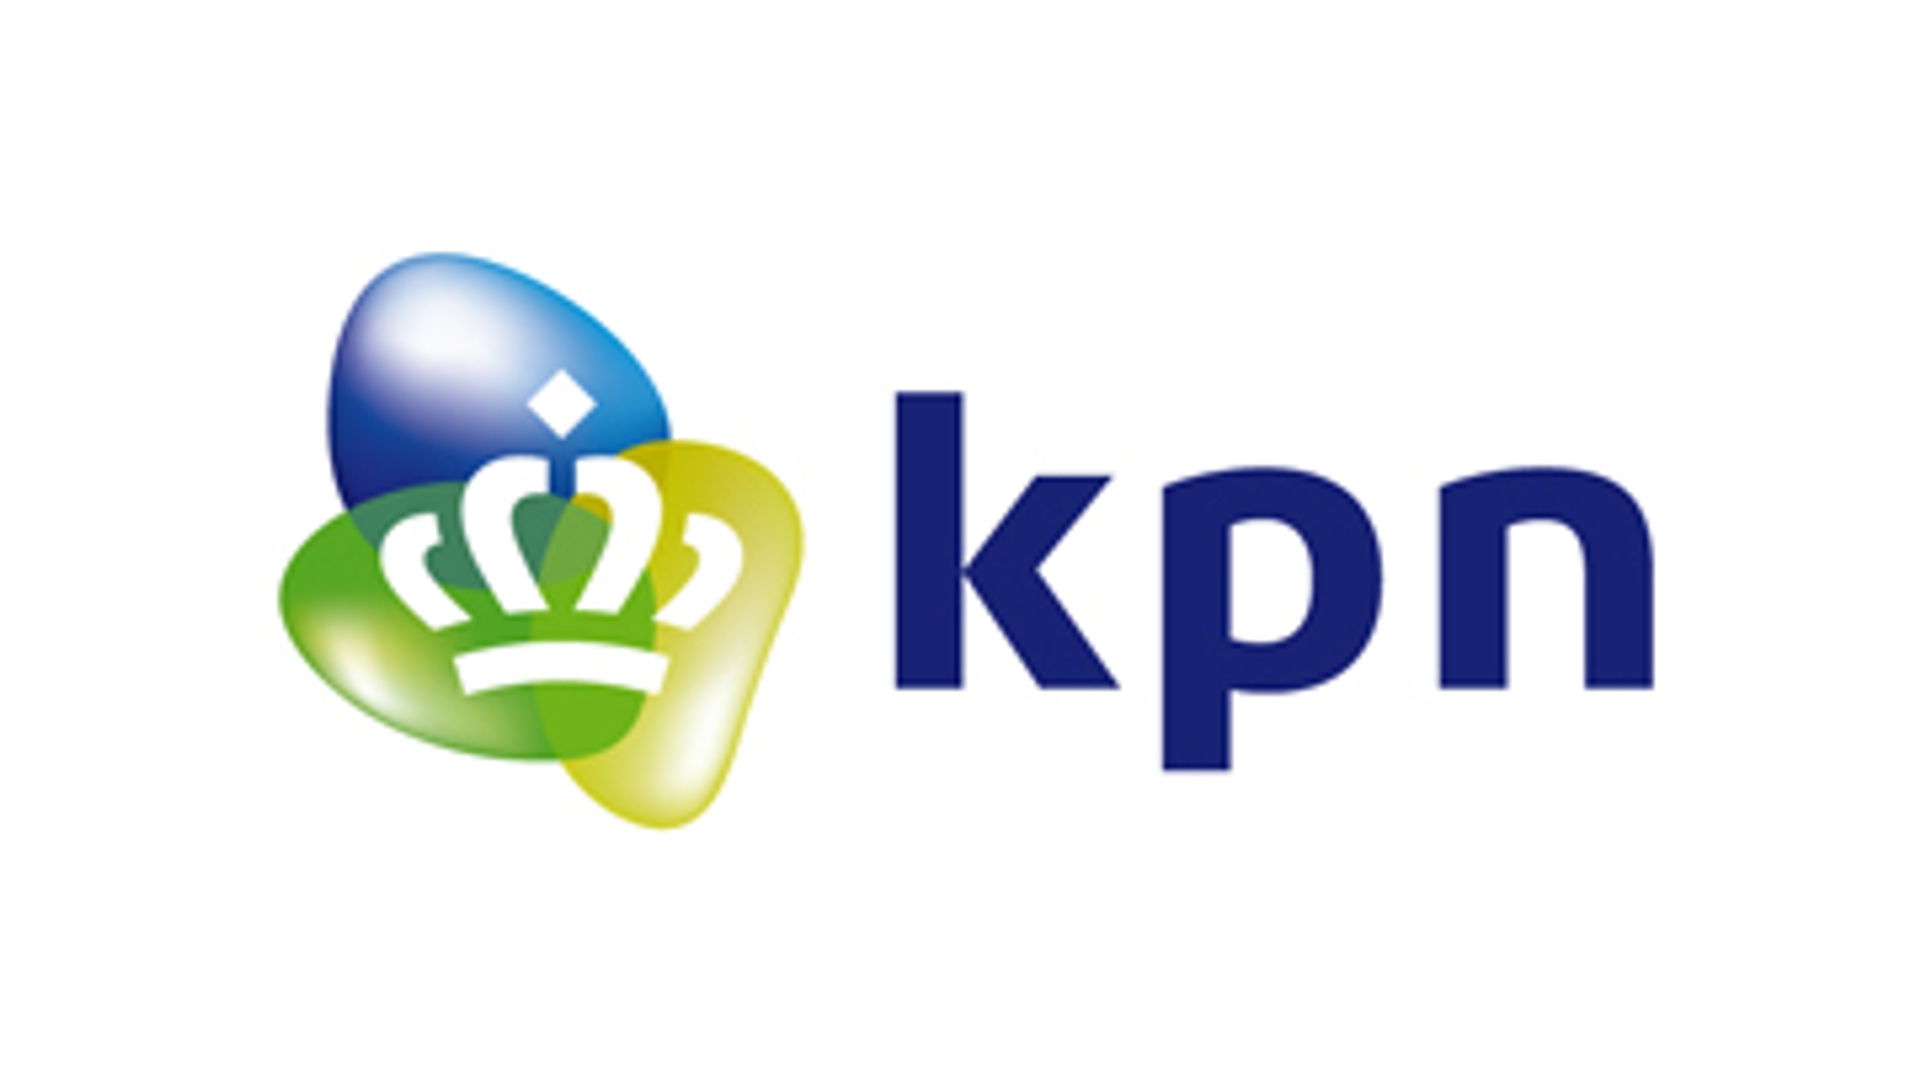 kpn_logo360210.jpg